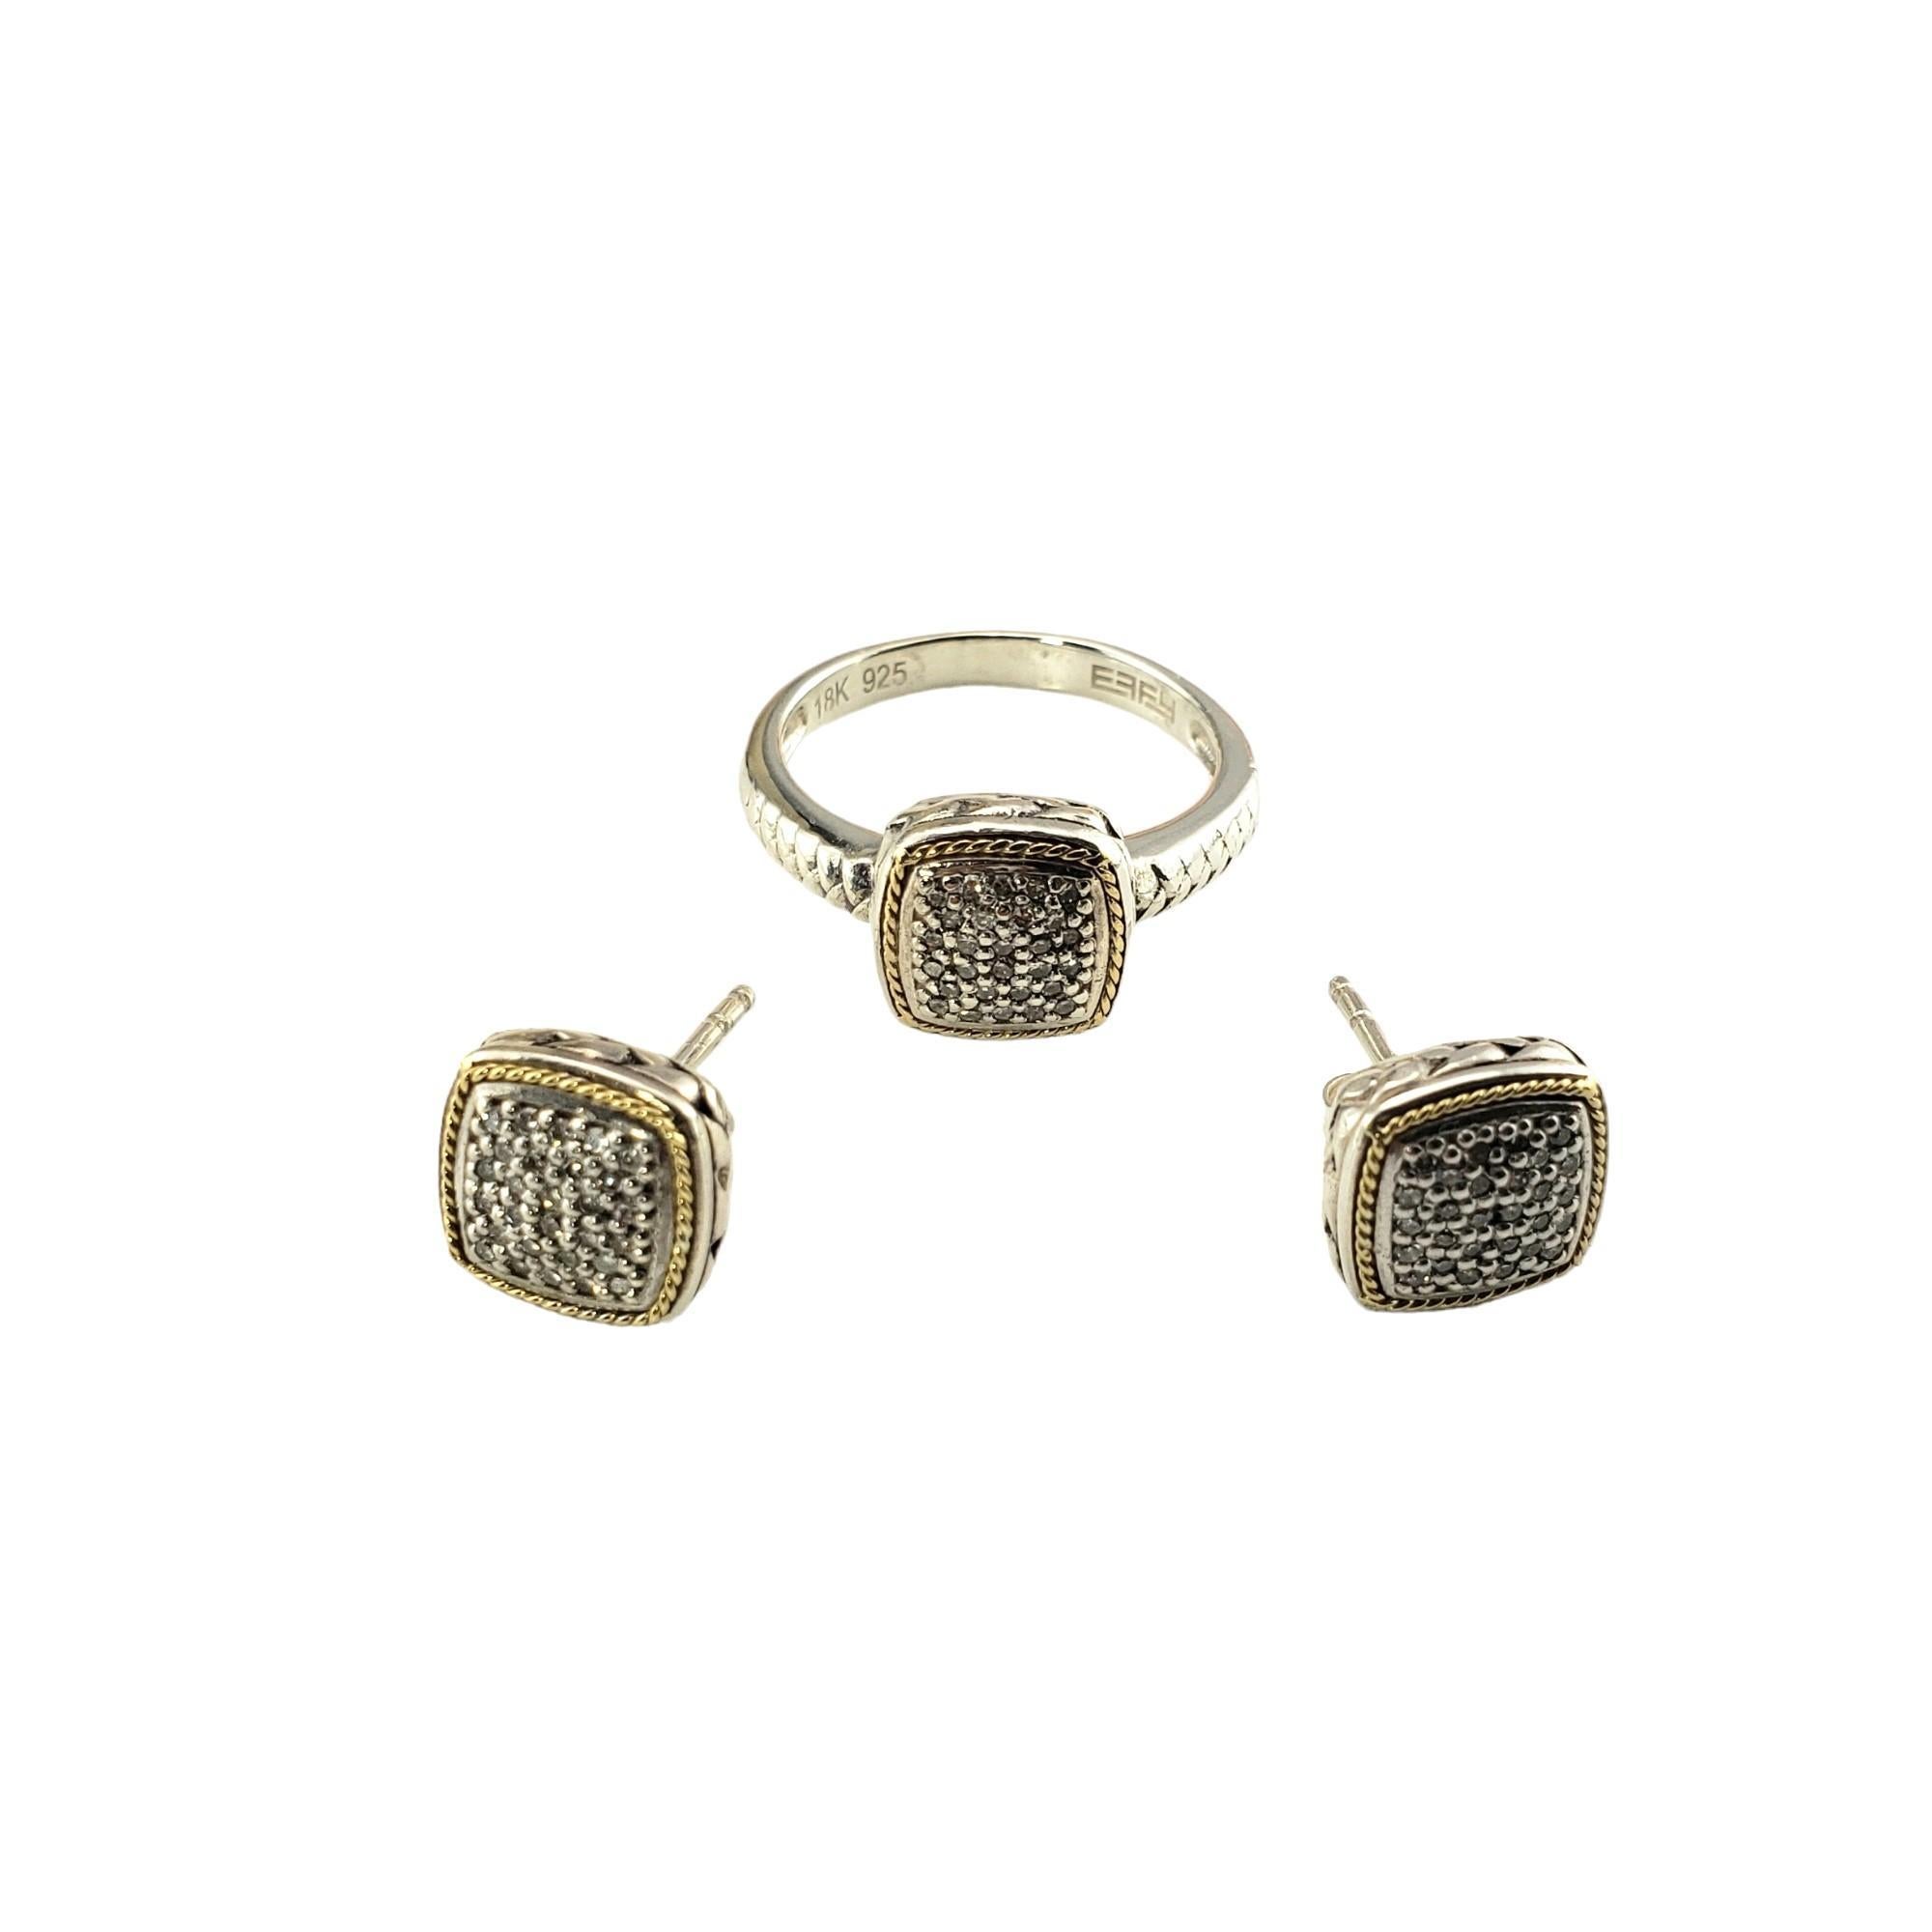 Effy Sterling Silber und 18K Gelbgold und Diamant Ring und Ohrring Set-

Dieser reizende Ring zeichnet sich durch wunderschön detailliert gefasste Diamanten in Sterlingsilber und 18 Karat Gelbgold aus.  Inklusive passender Ohrringe.

Ungefähres